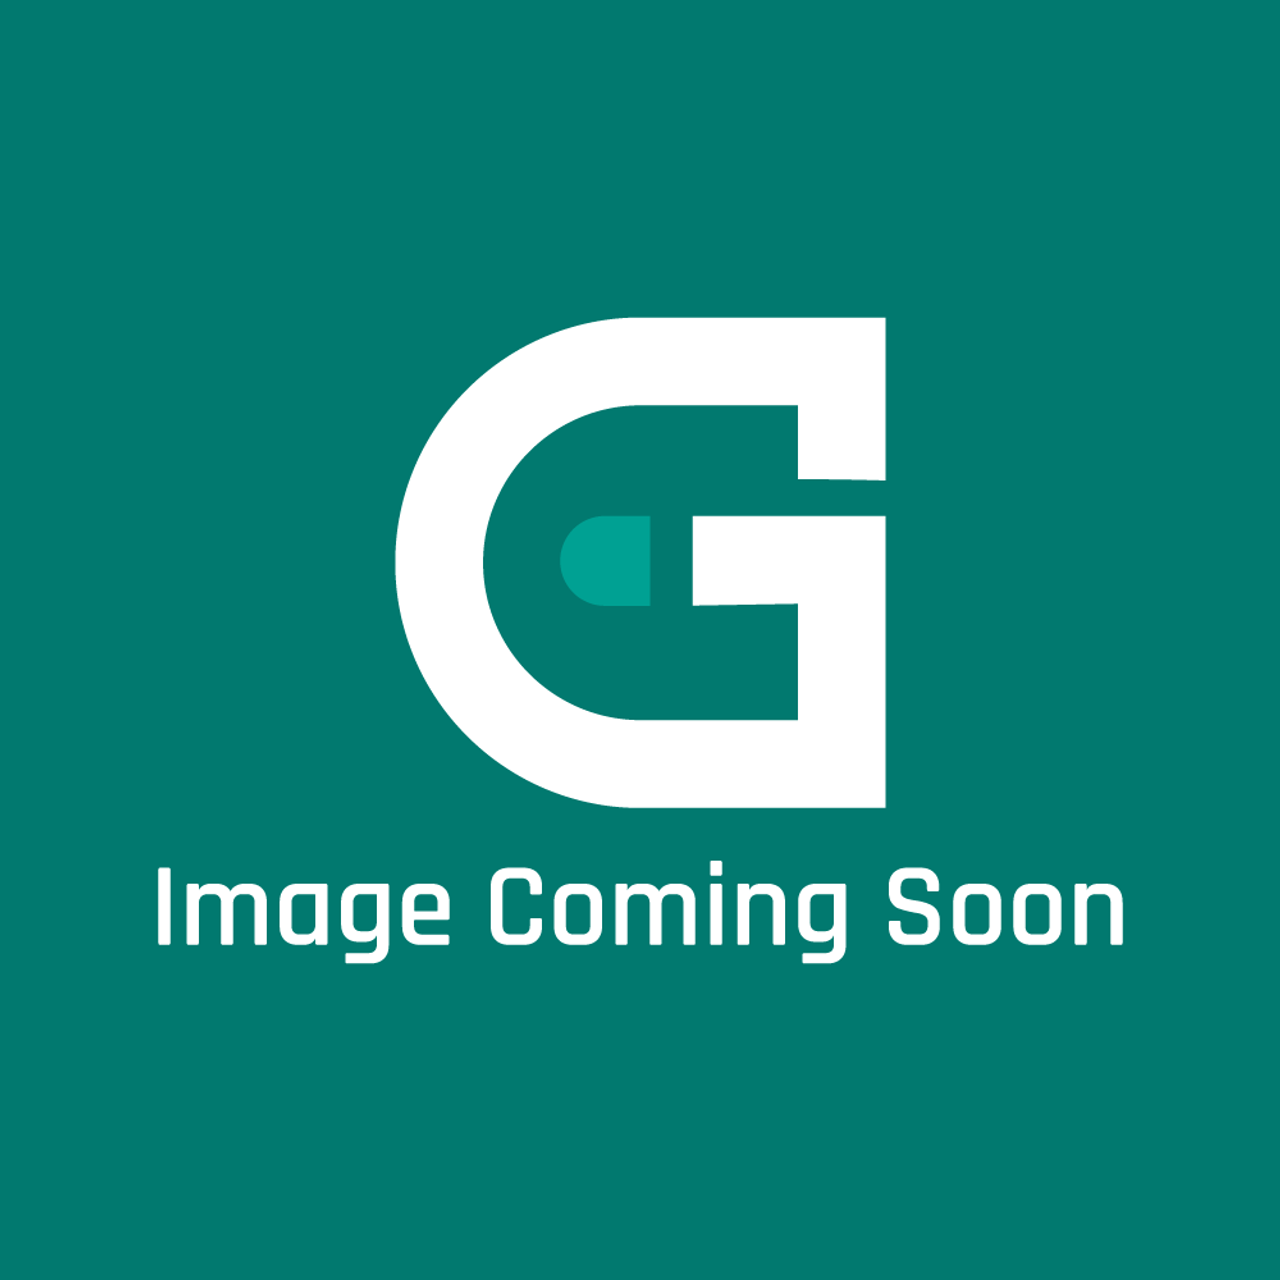 Groen Z010047 - 3/4" Steam Pressure Regu Lator - Image Coming Soon!